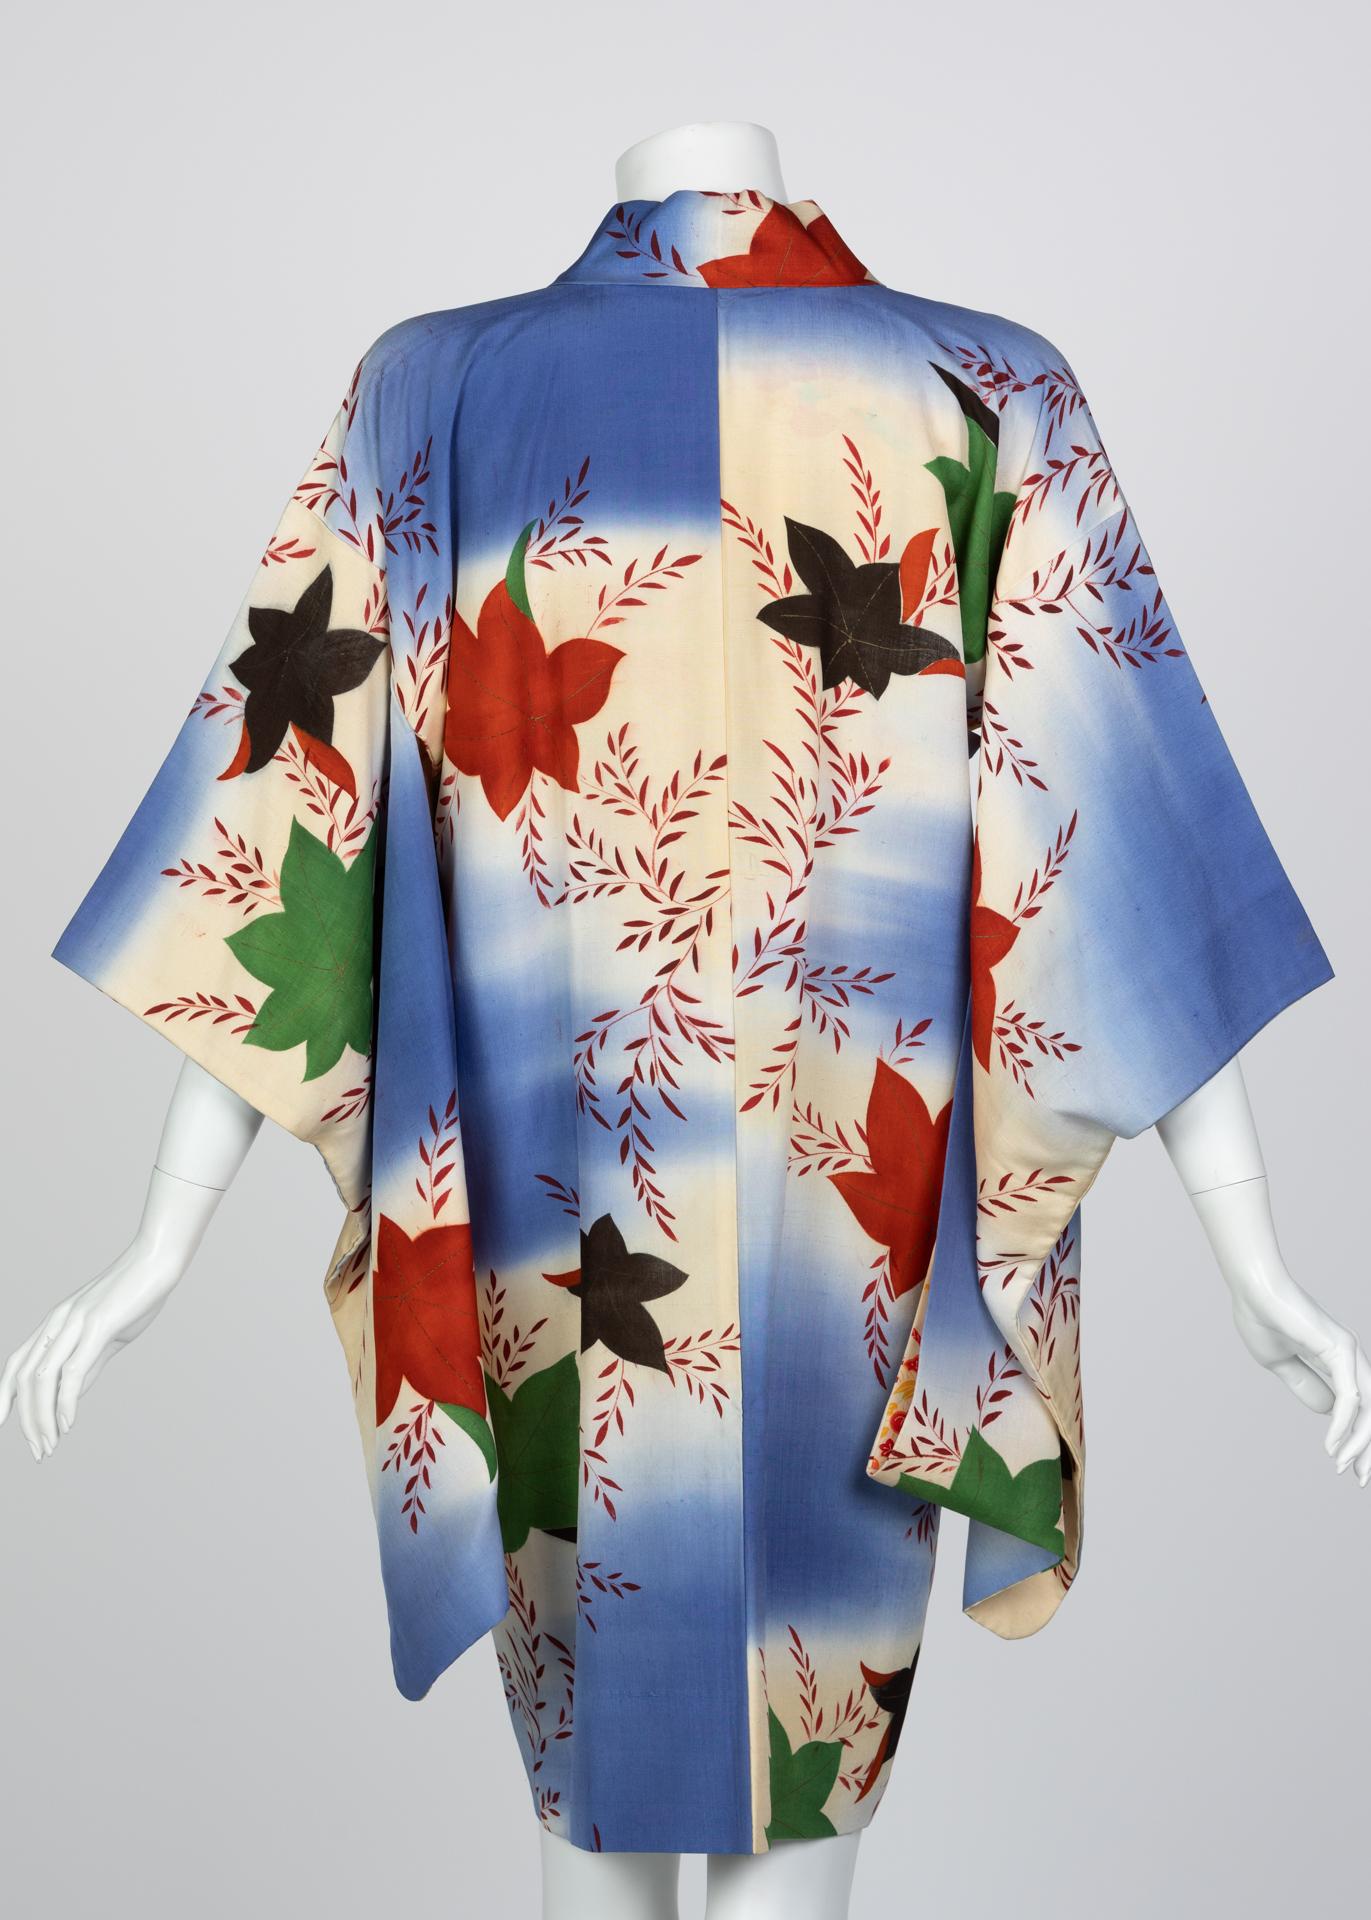 Robe kimono en soie japonaise aquarelle à feuilles tombantes, années 1970 Excellent état - En vente à Boca Raton, FL